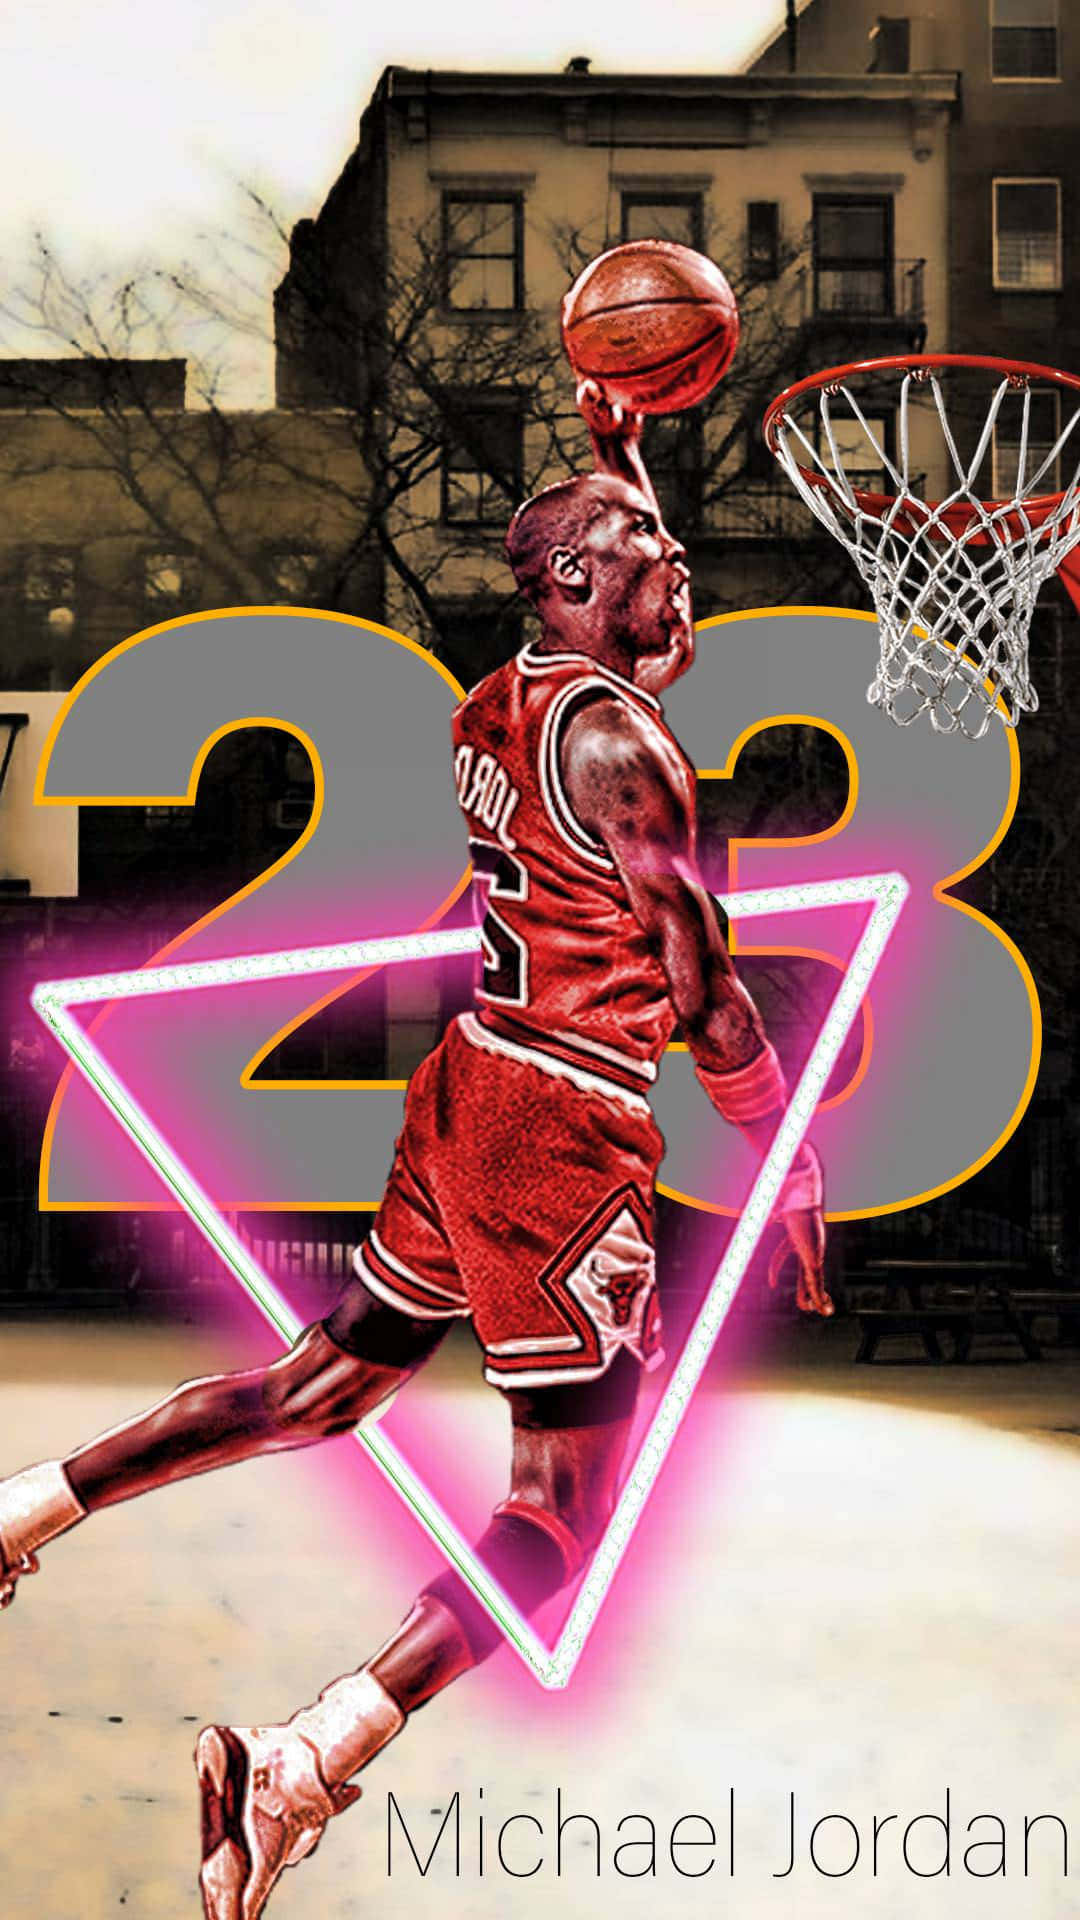 100+] Basketball Michael Jordan Wallpapers